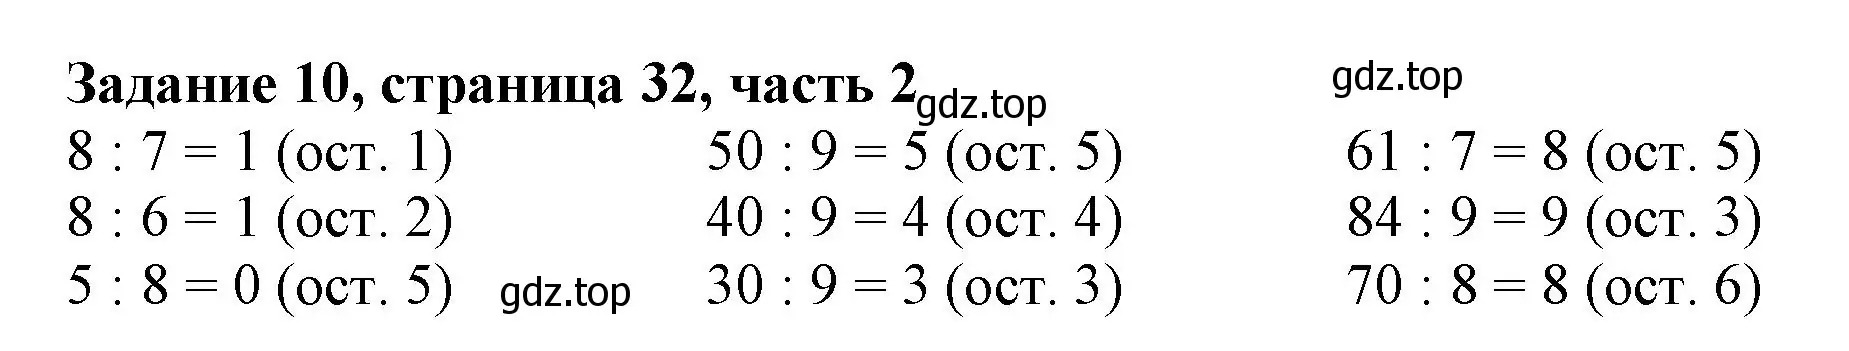 Решение номер 10 (страница 32) гдз по математике 3 класс Моро, Бантова, учебник 2 часть